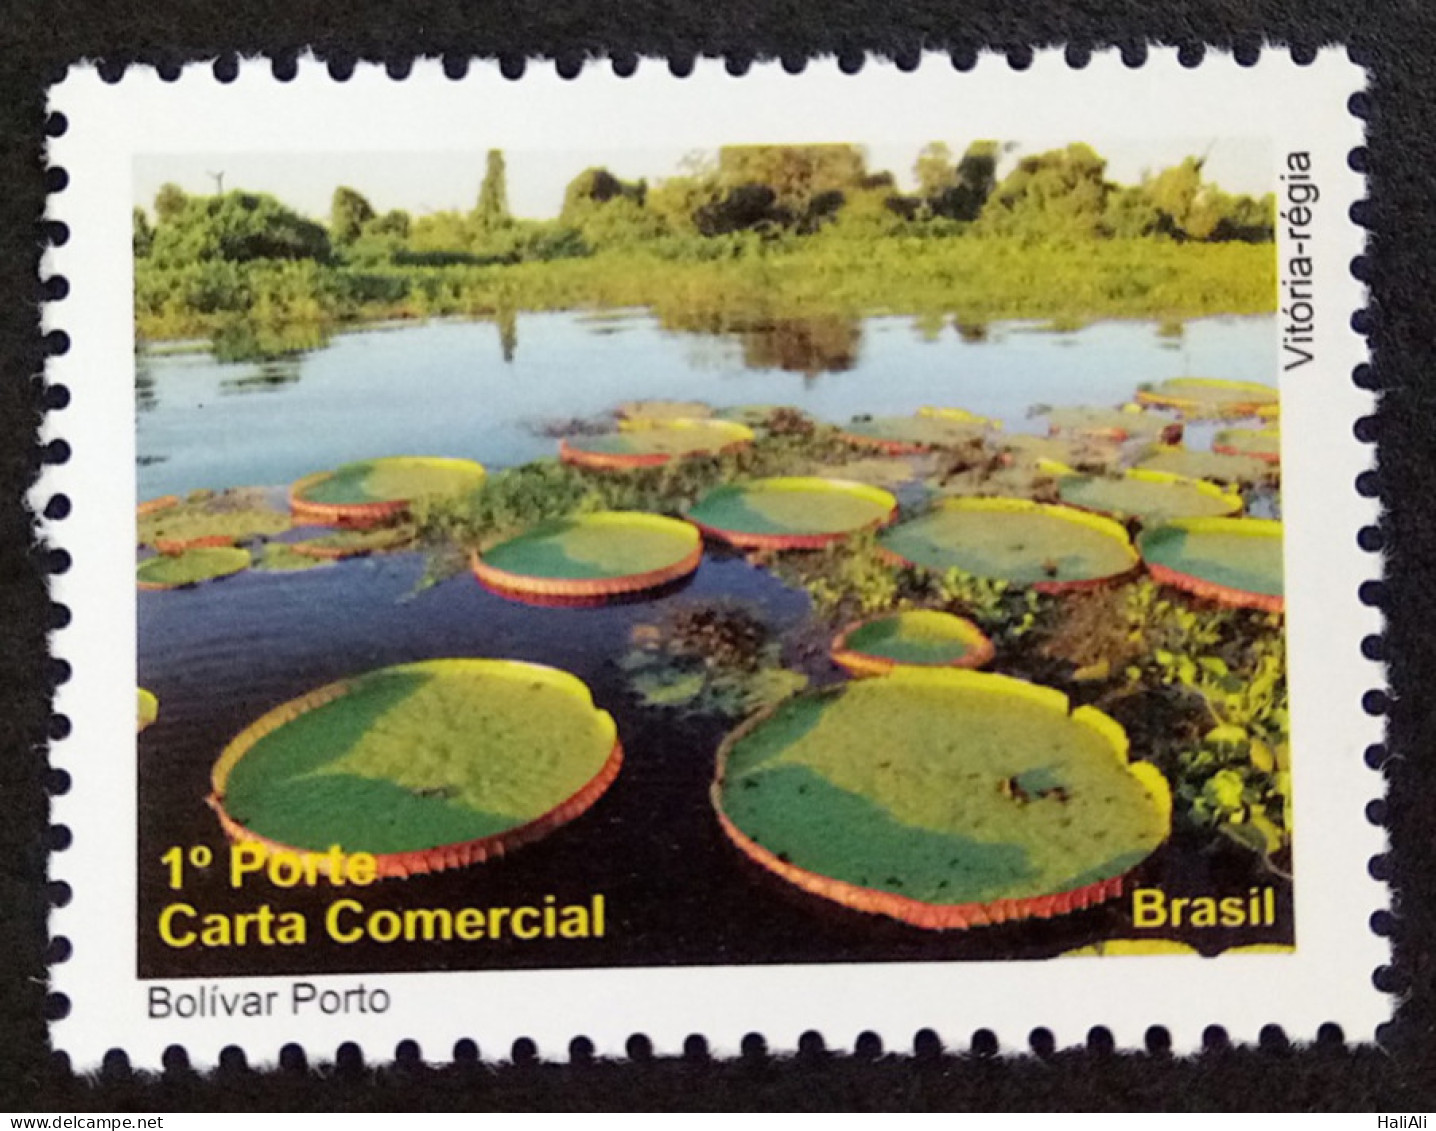 C 3008 Brazil Depersonalized Stamp Tourism Pantanal 2010 Flora Victoria Regia Leaf - Personnalisés